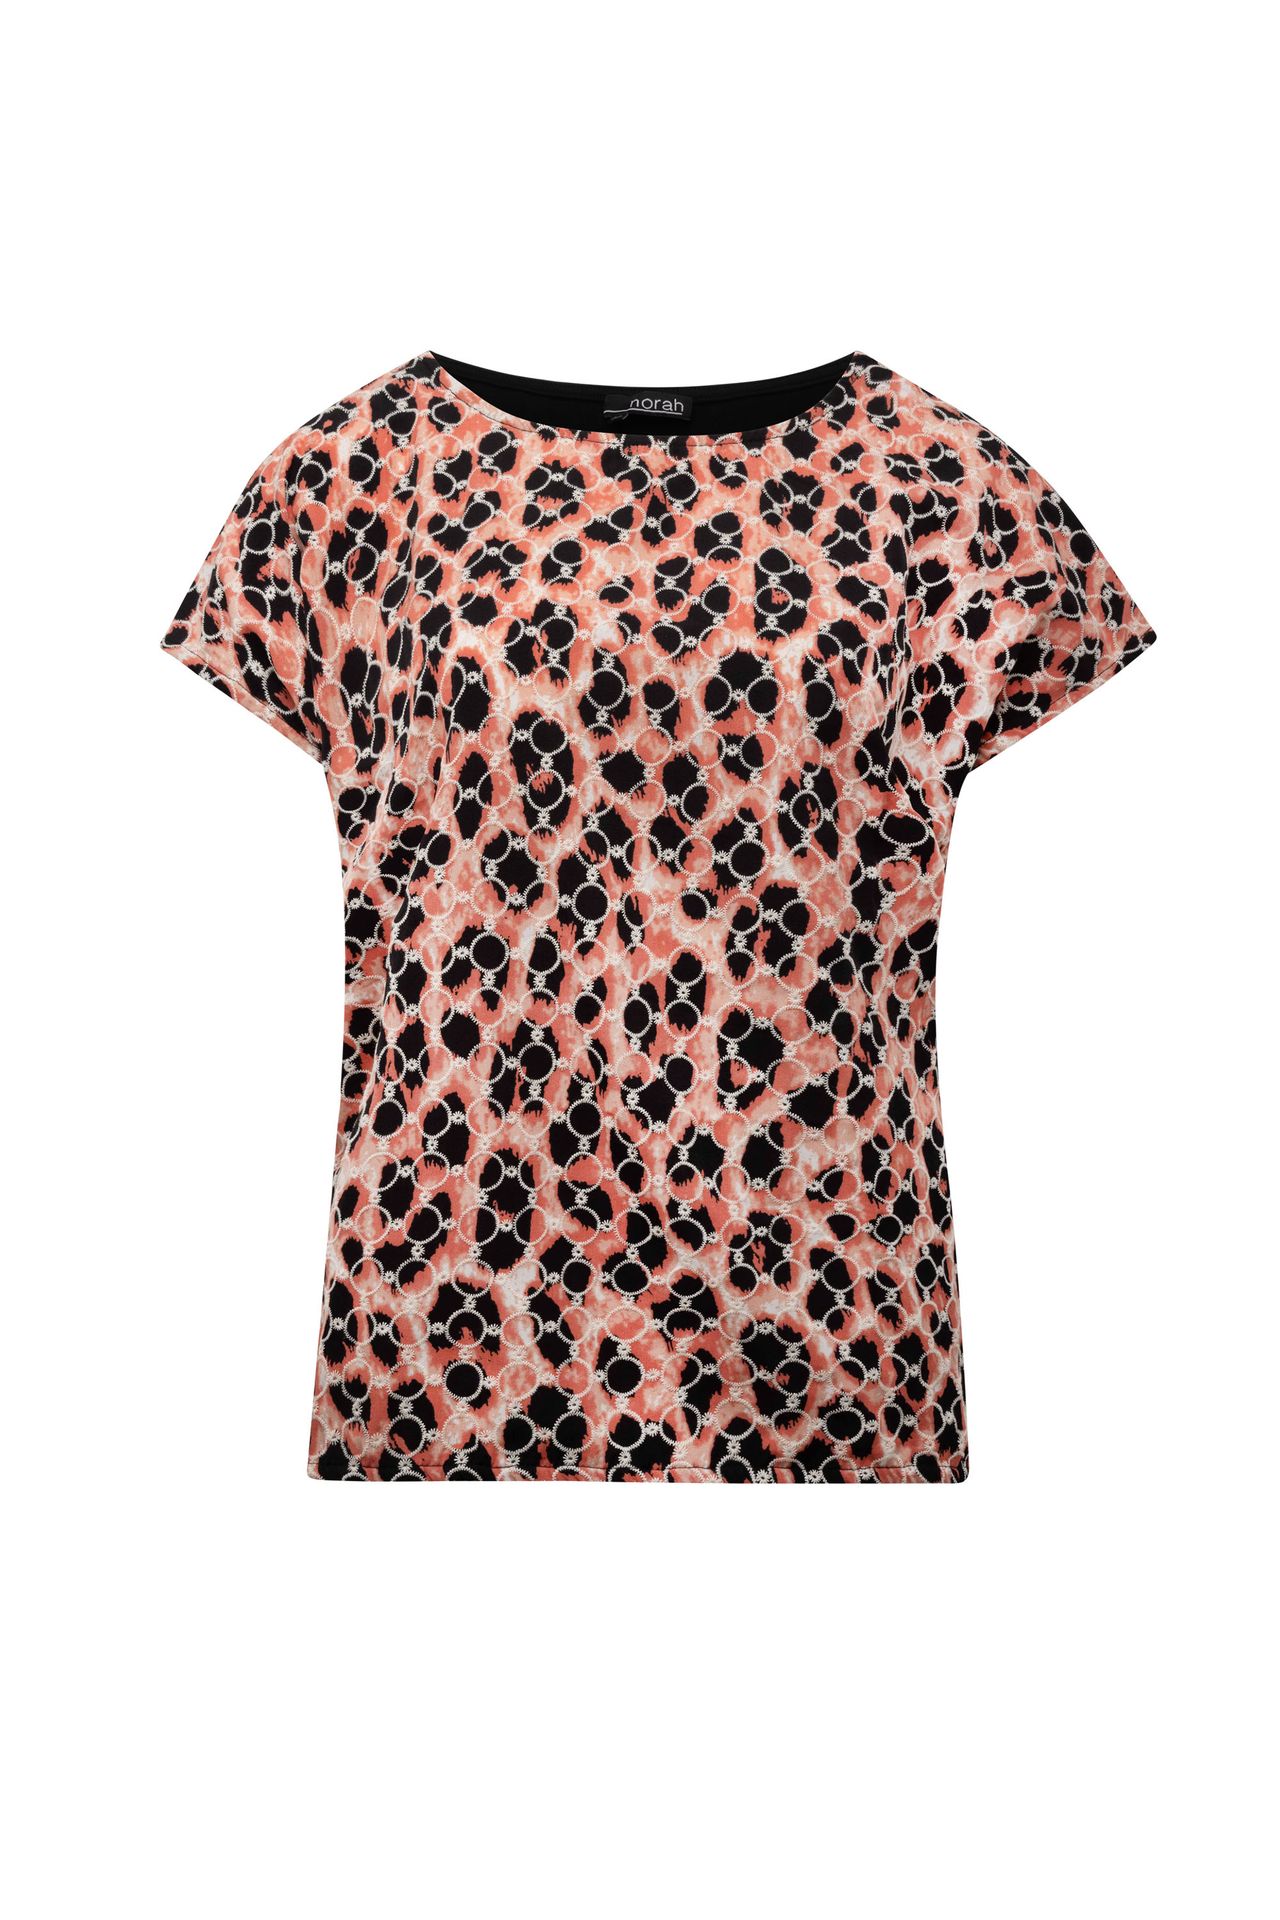 Norah Roze shirt rose multicolor 213985-910